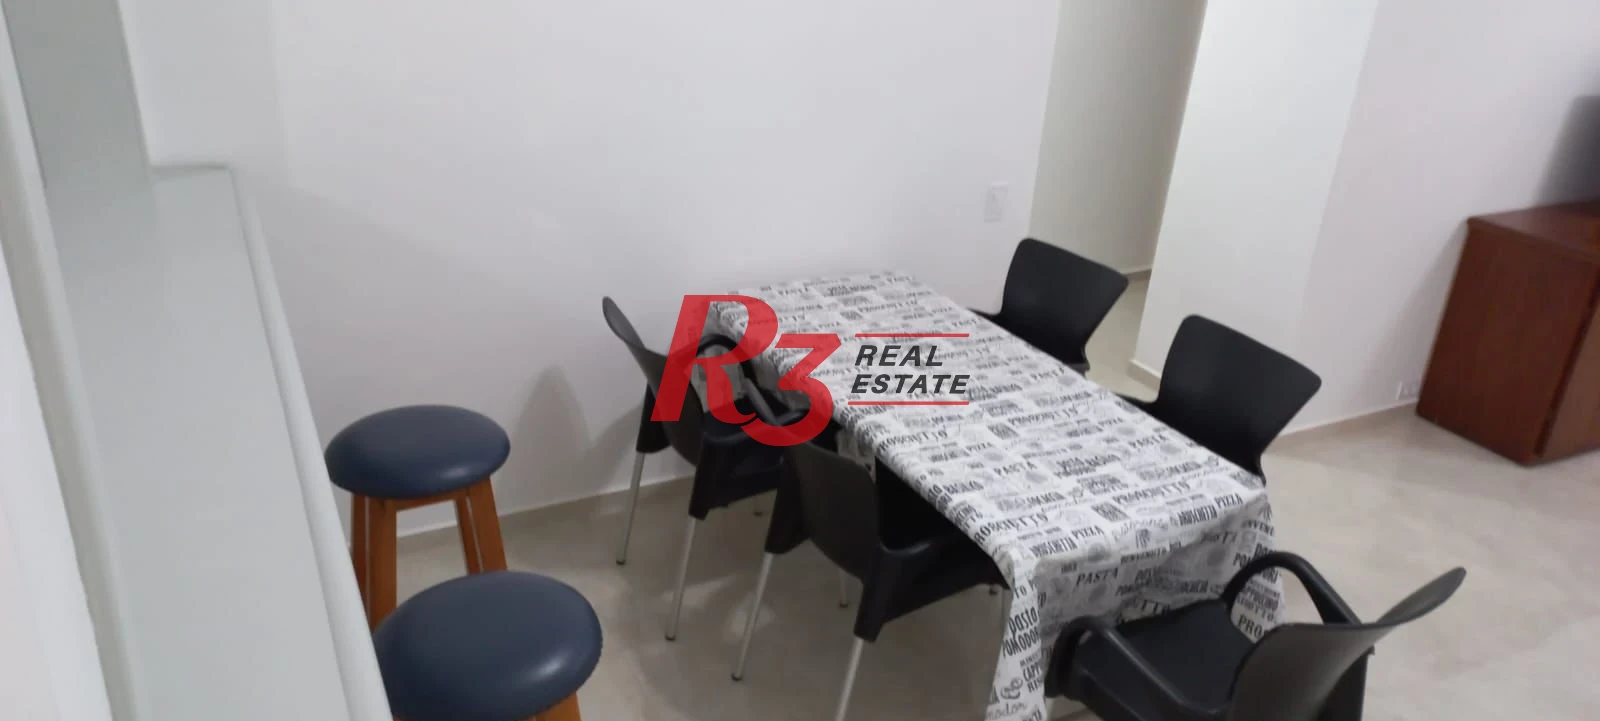 Apartamento com 3 dormitórios à venda - Pitangueiras - Guarujá/SP